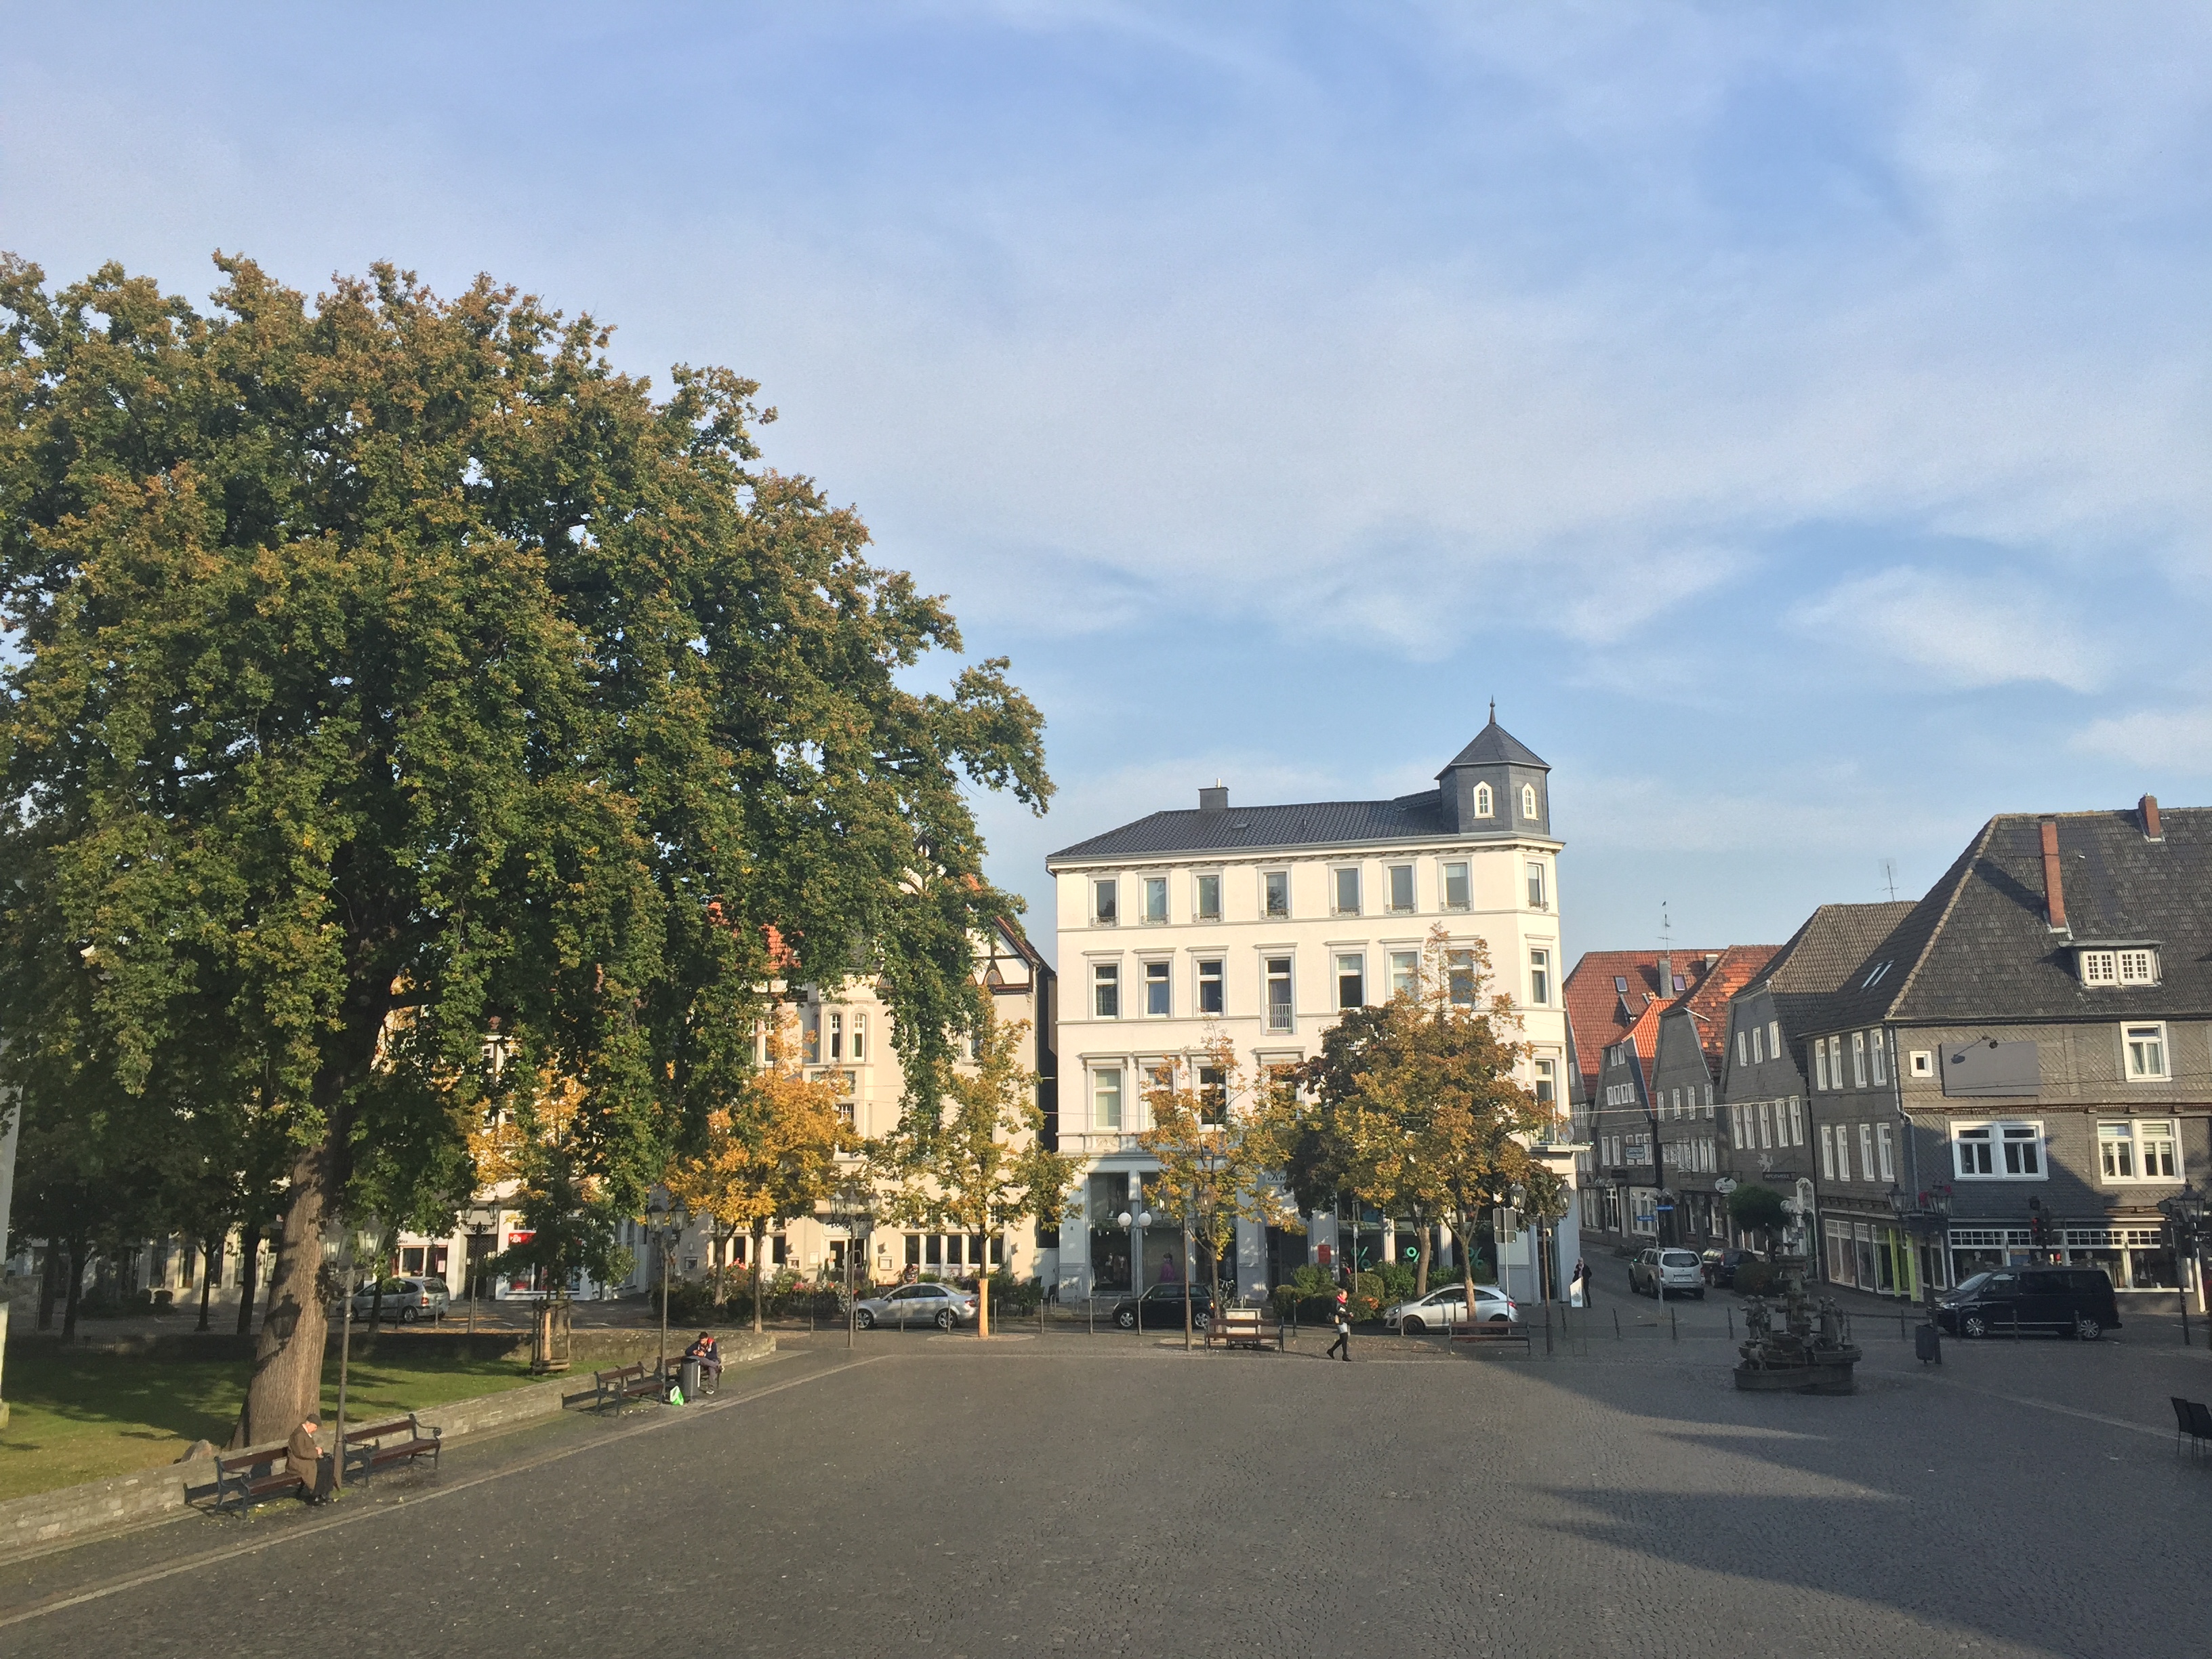 Altstadtfest auf dem Rathausplatz Lippstadt - Unterkünfte in der Nähe finden